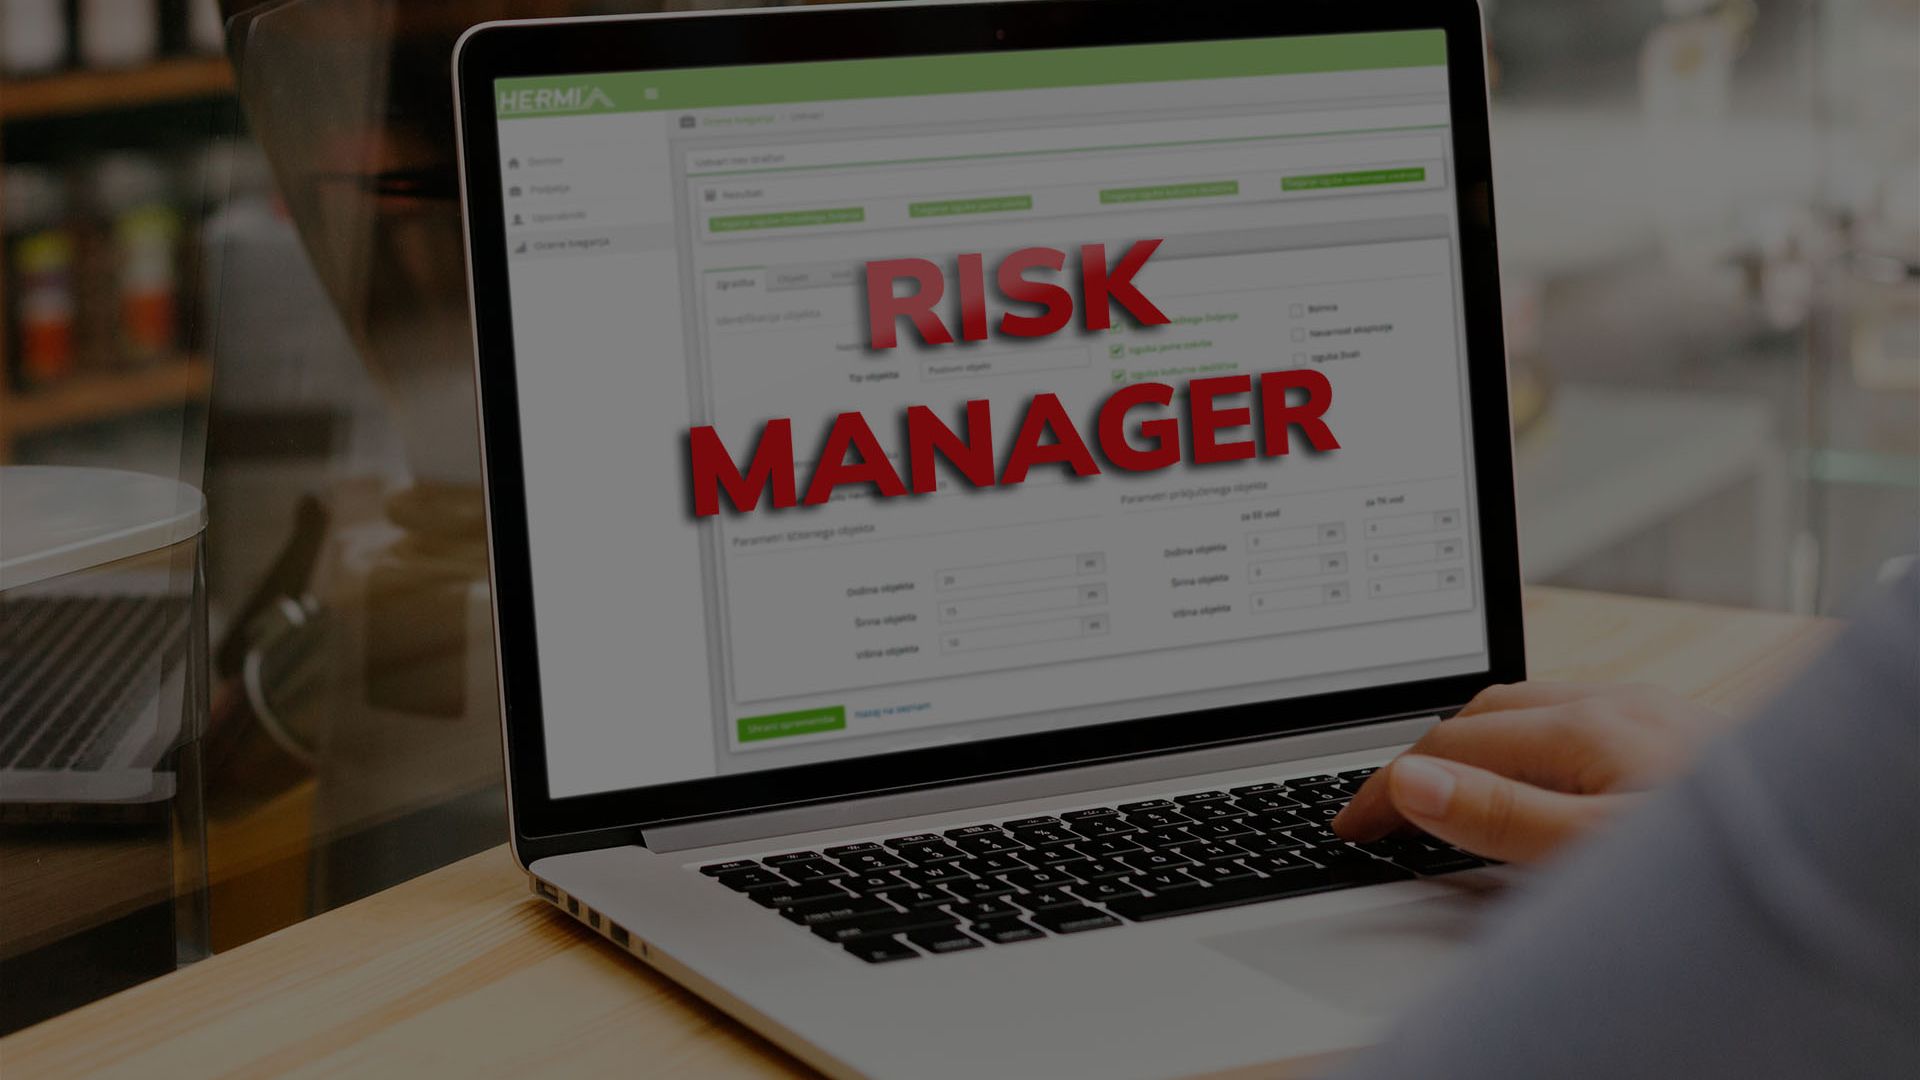 Risk Manager